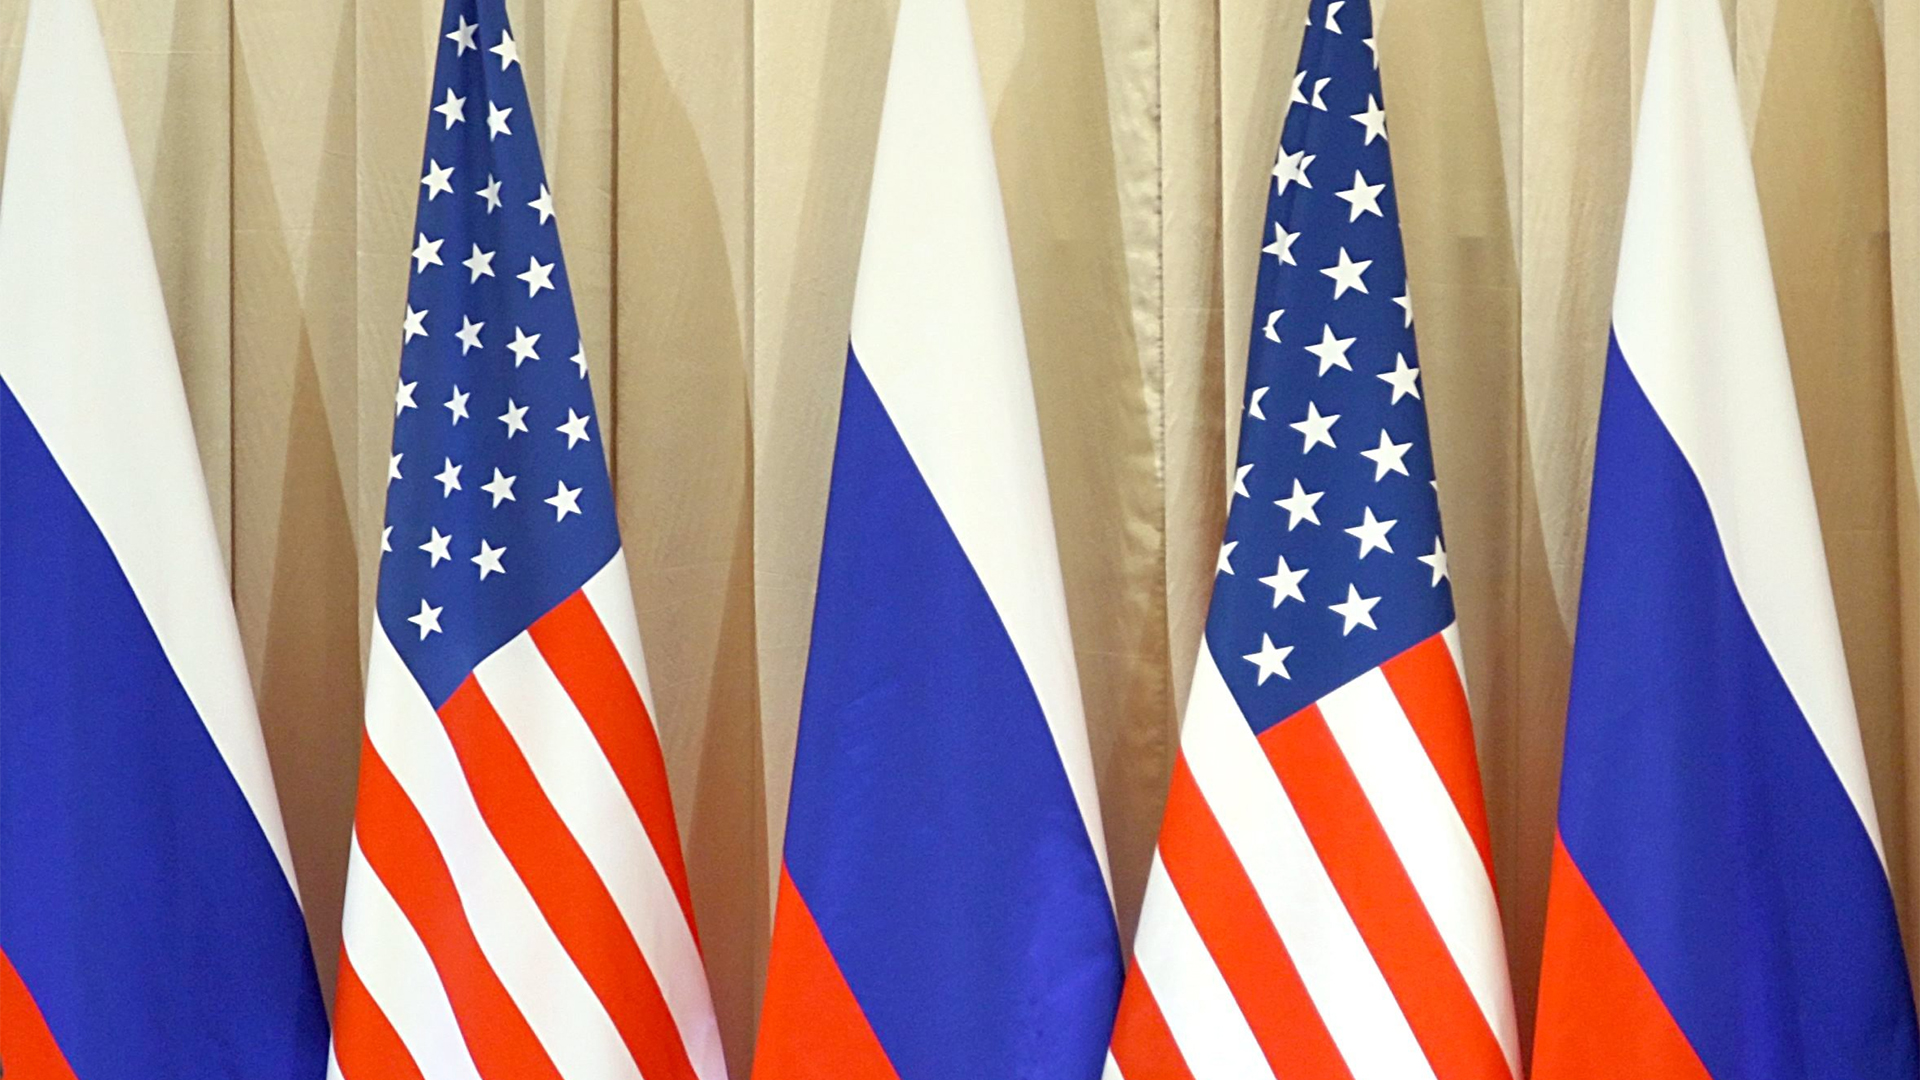 Flagge der USA und Russland | picture alliance / epa Sergei Il